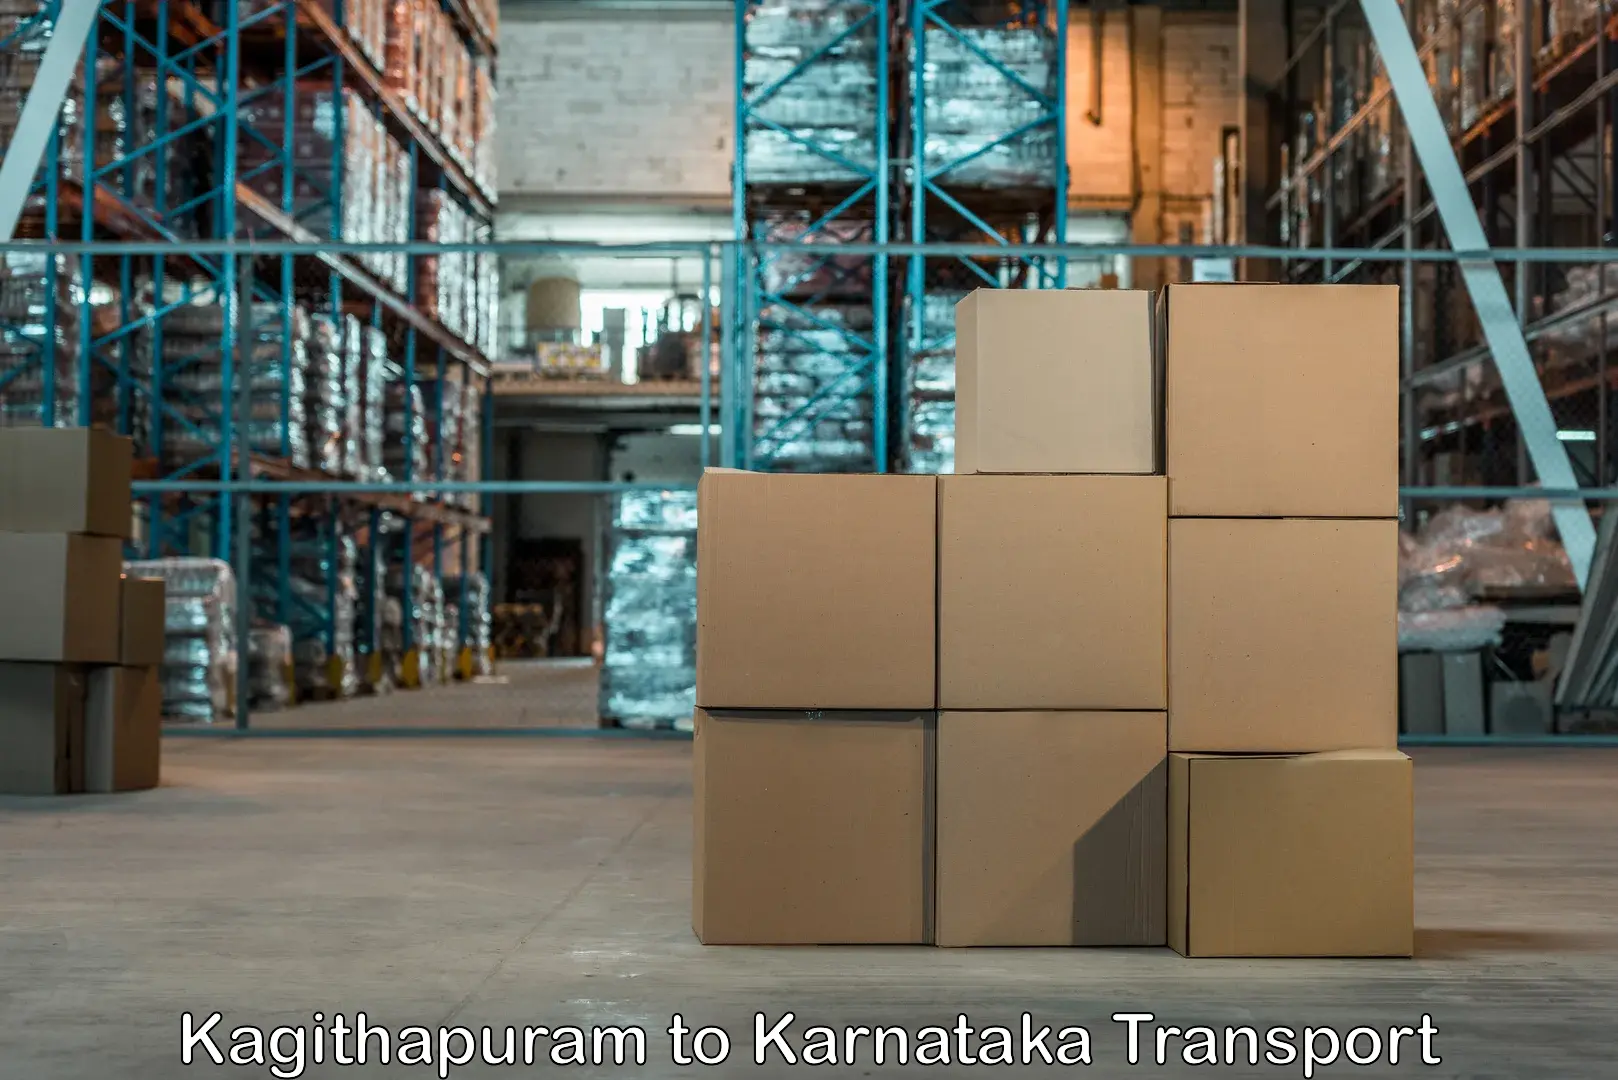 Truck transport companies in India Kagithapuram to Karnataka